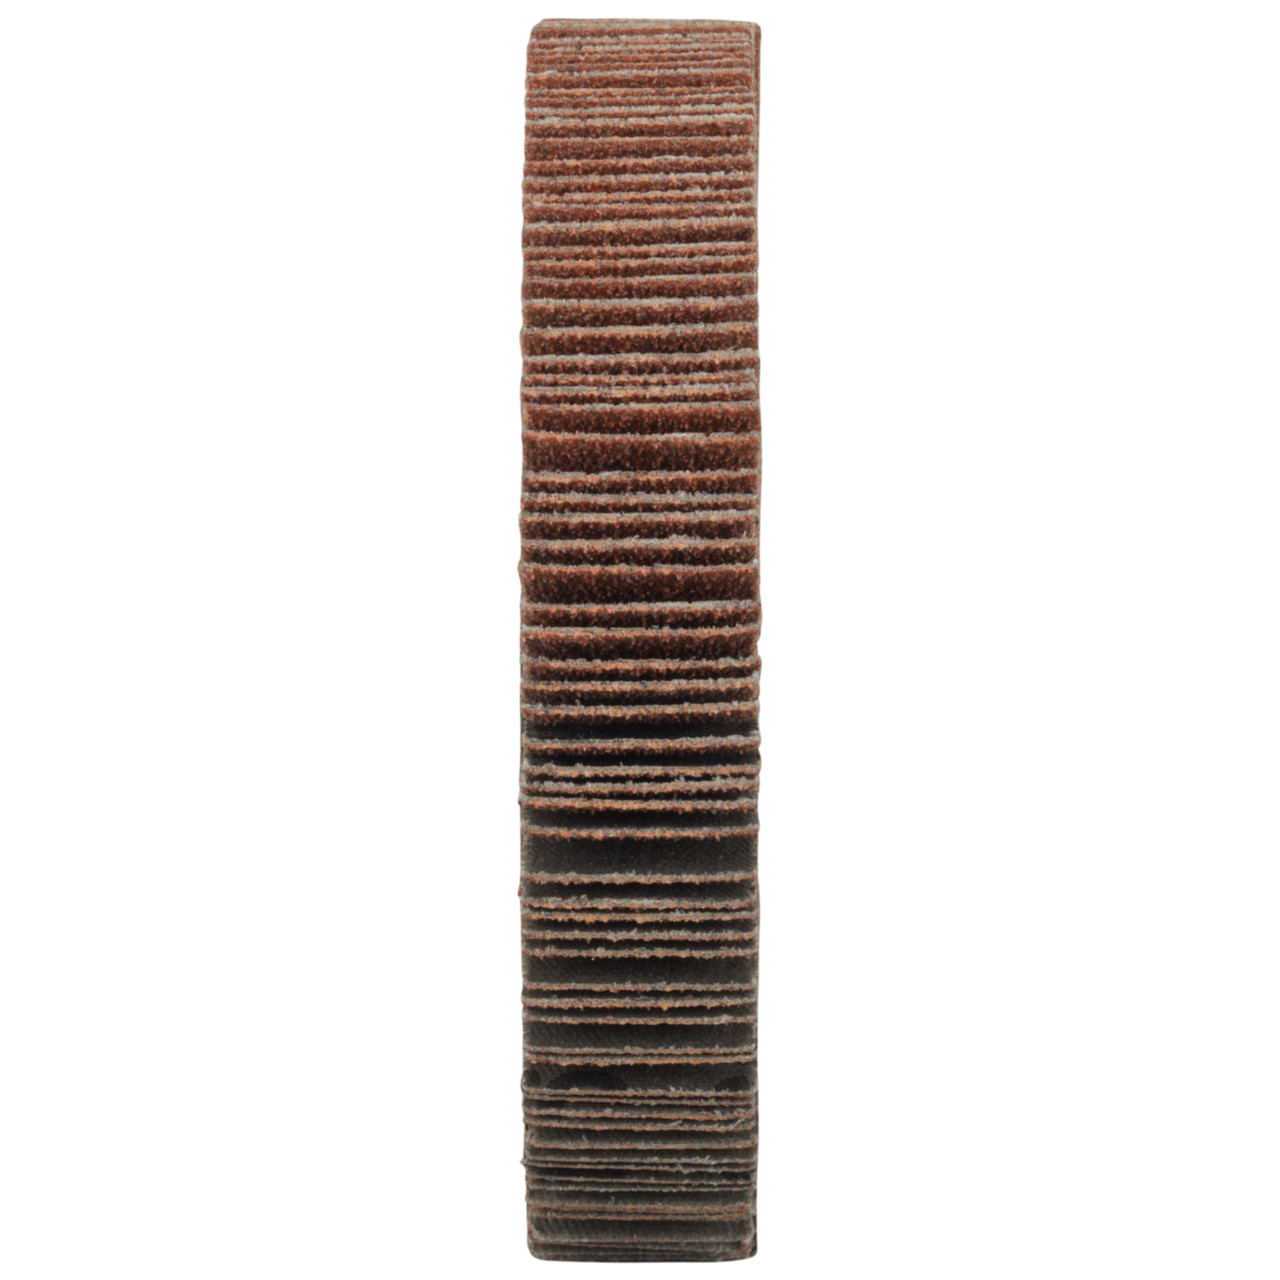 Tyrolit A-P01 C X Ruedas de abanico DxD 115x20 Para acero, metal no férreo y madera, P60, forma: 1LA - (rueda de abanico), Art. 34057513